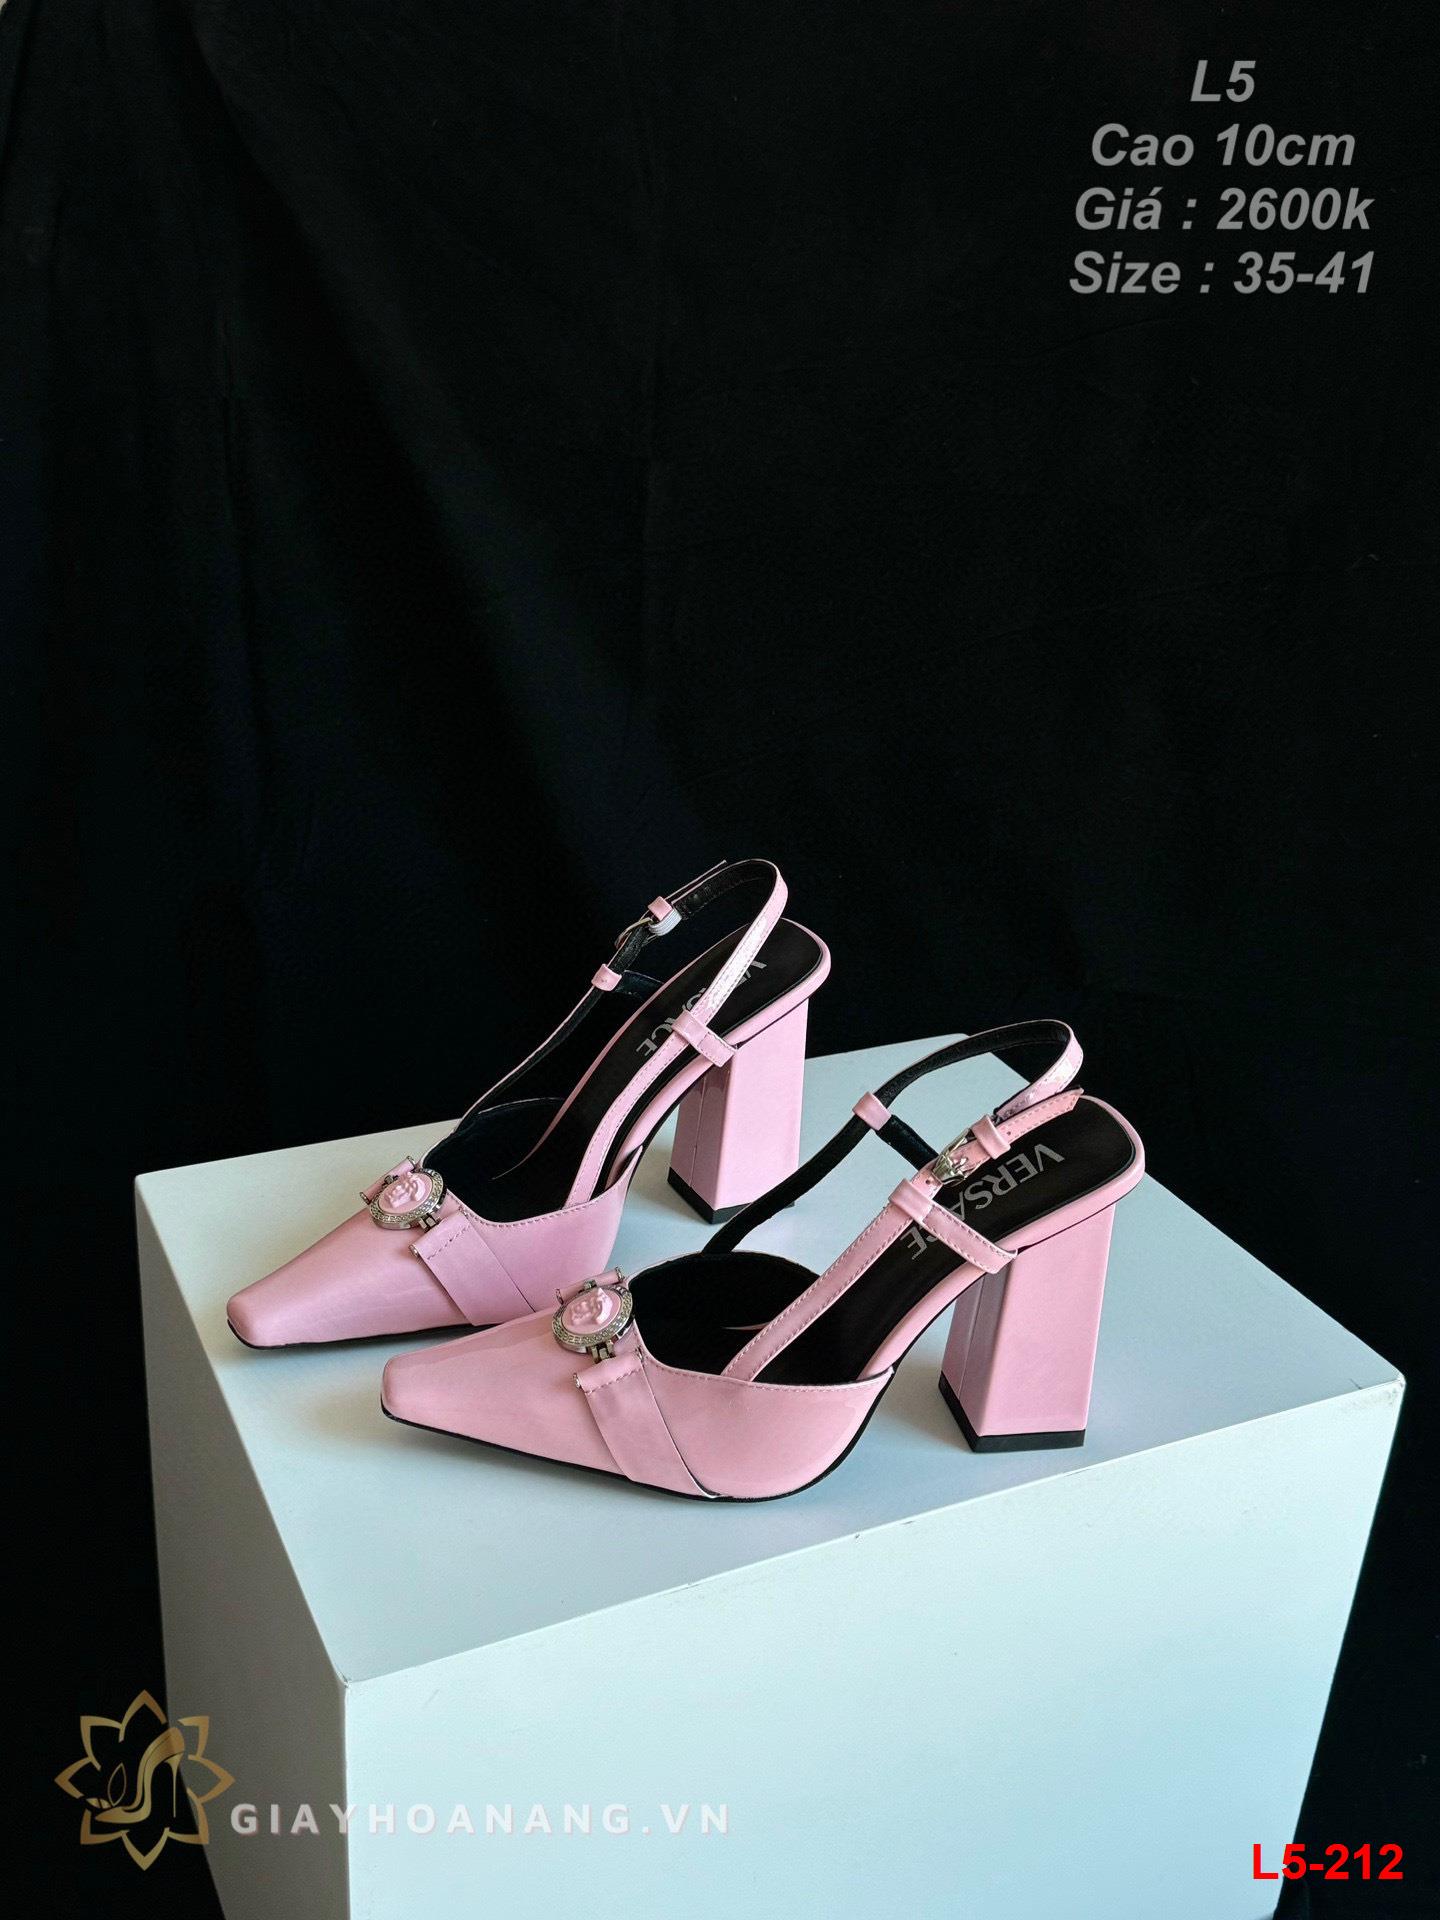 L5-212 Versace sandal cao 10cm siêu cấp